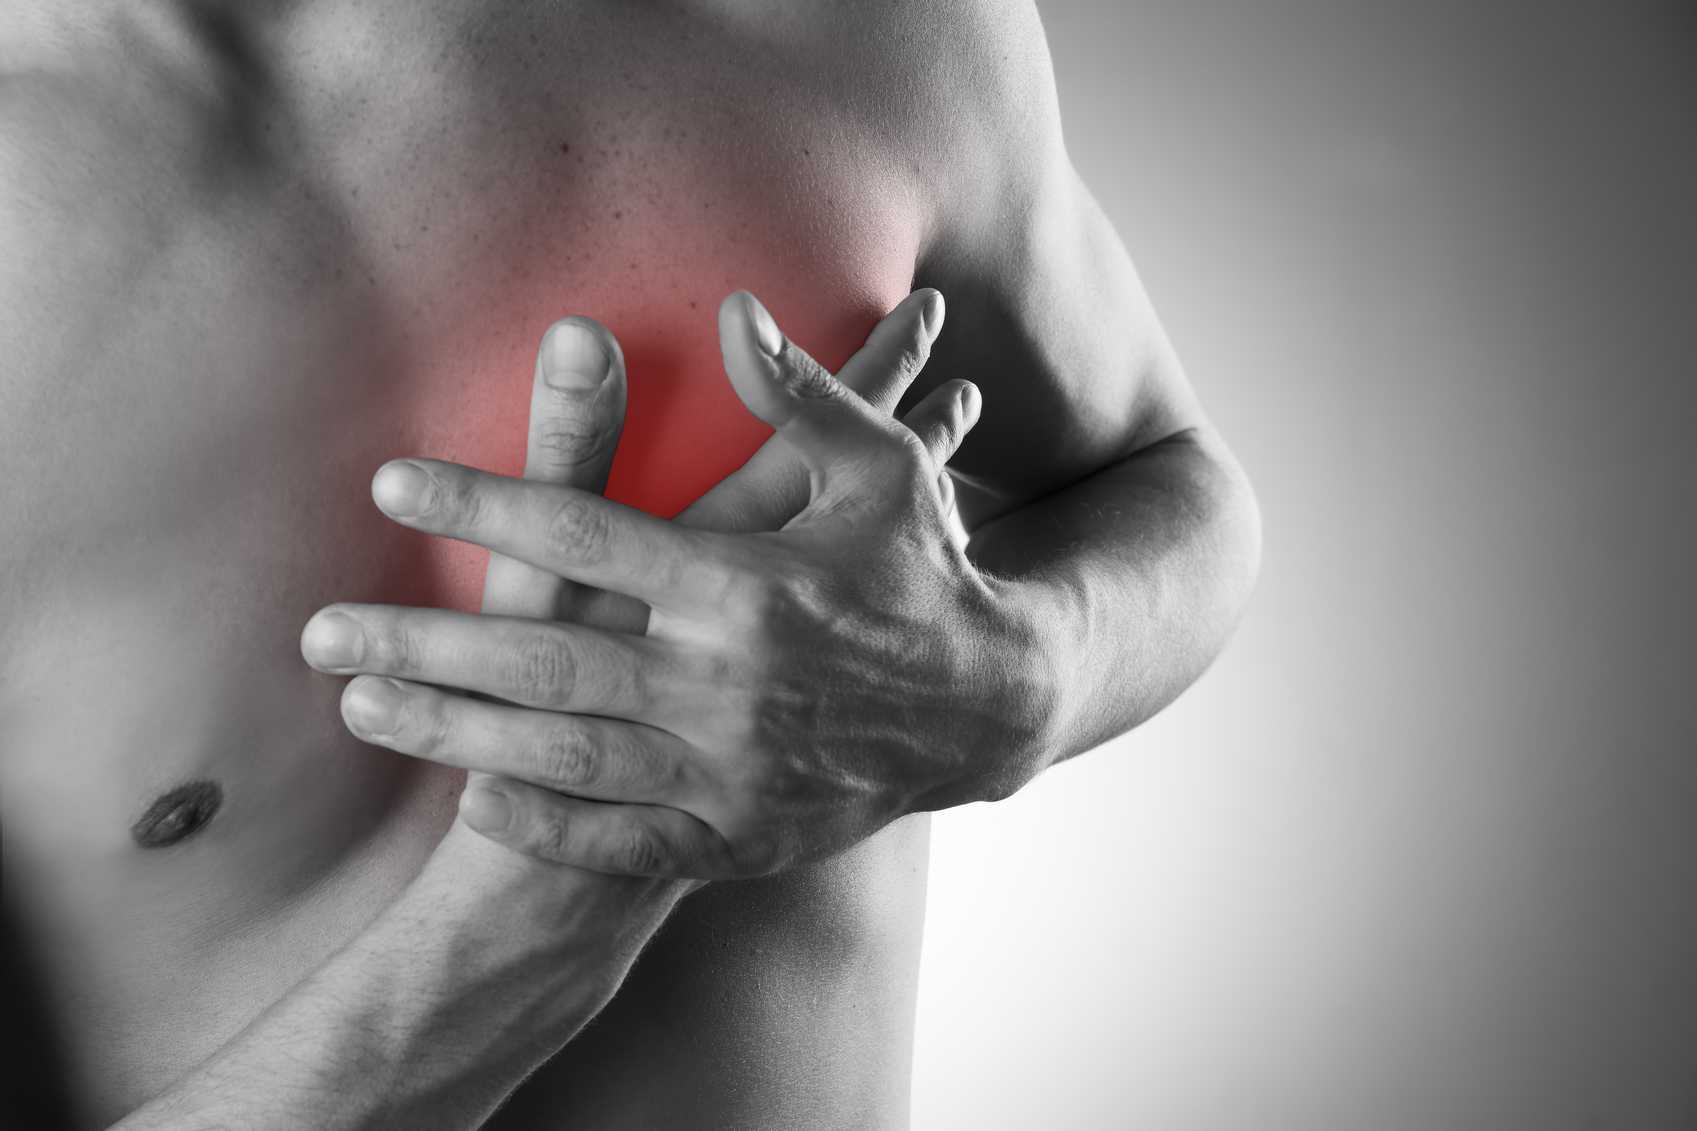 chest pain diabetes type 1